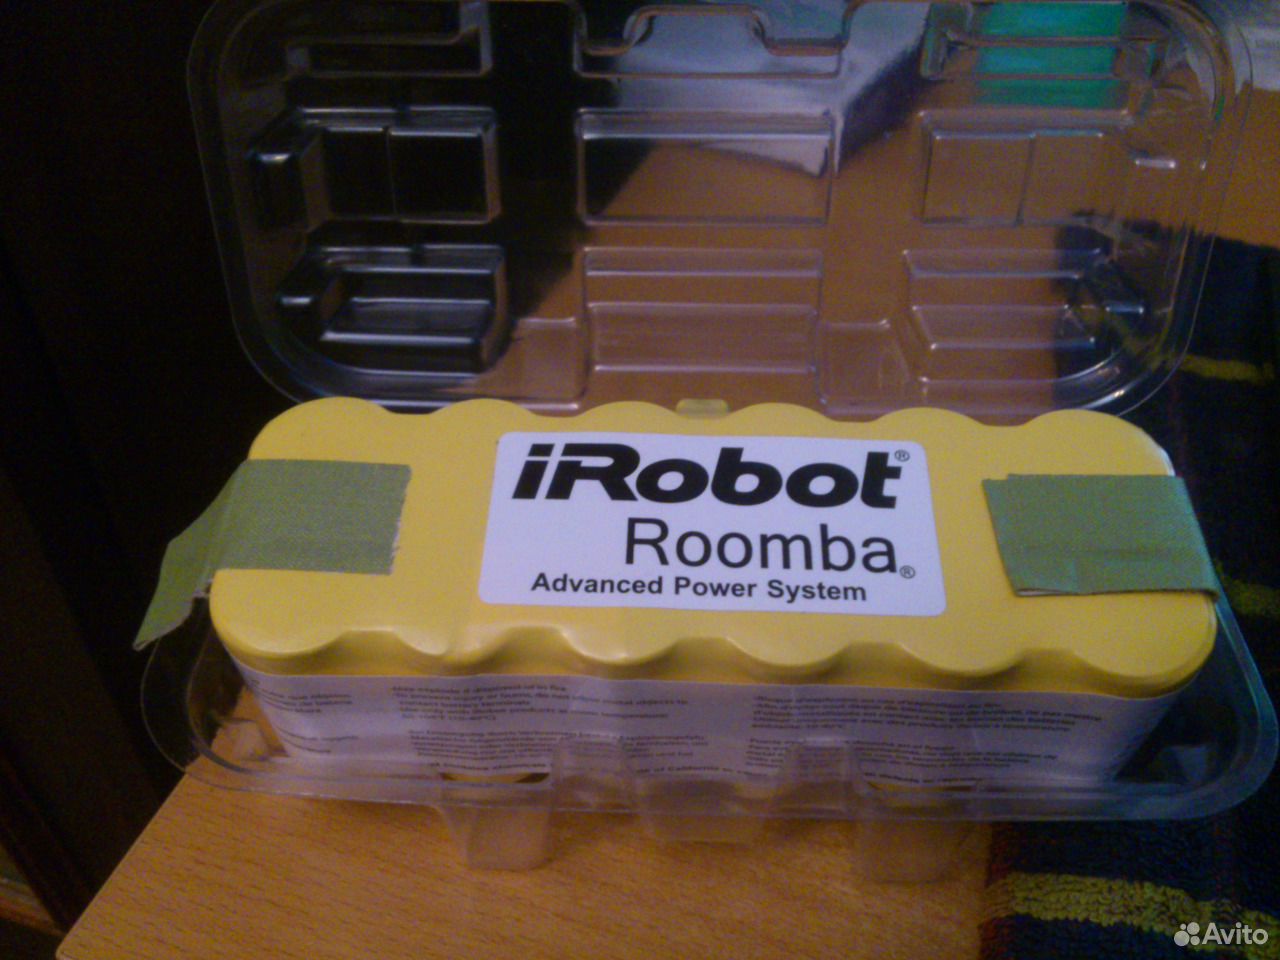 Irobot roomba аккумулятор купить. IROBOT Roomba аккумулятор. Sgsea/070388 IROBOT Roomba аккумулятор. IROBOT Roomba Battery Pins. Roomba 650 аккумулятор контакты.